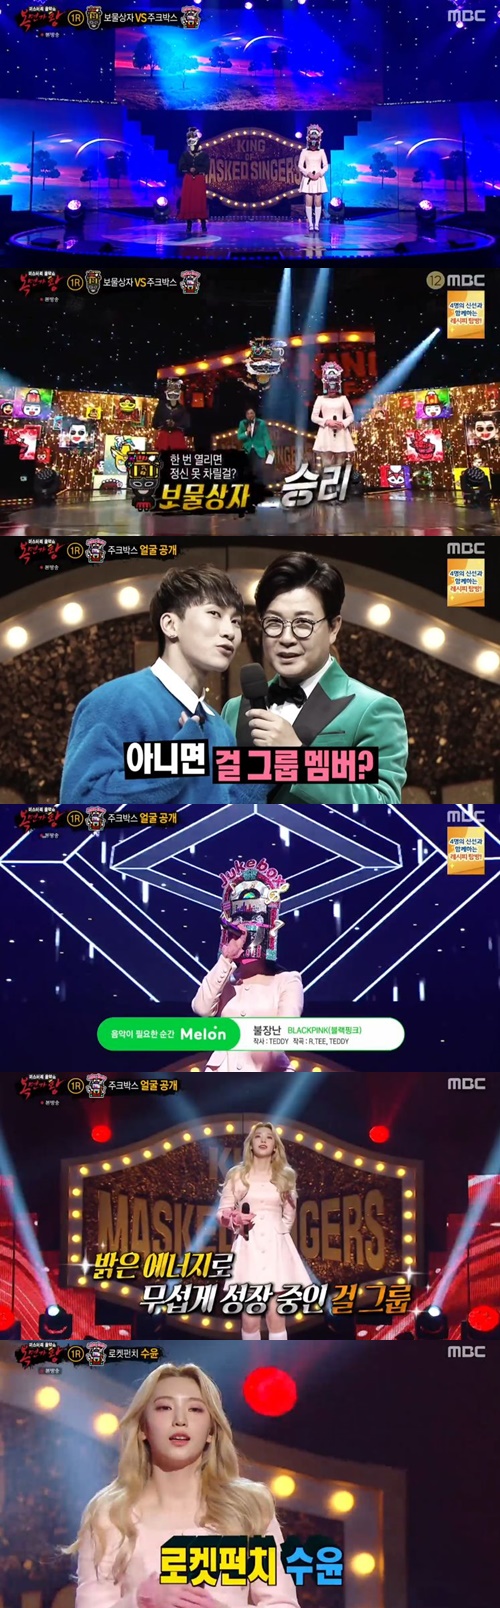 ‘복면가왕’ 주크박스가 정체를 공개한 가운데 로켓펀치 수윤이었다. 사진=MBC 예능프로그램 ‘복면가왕’ 캡처